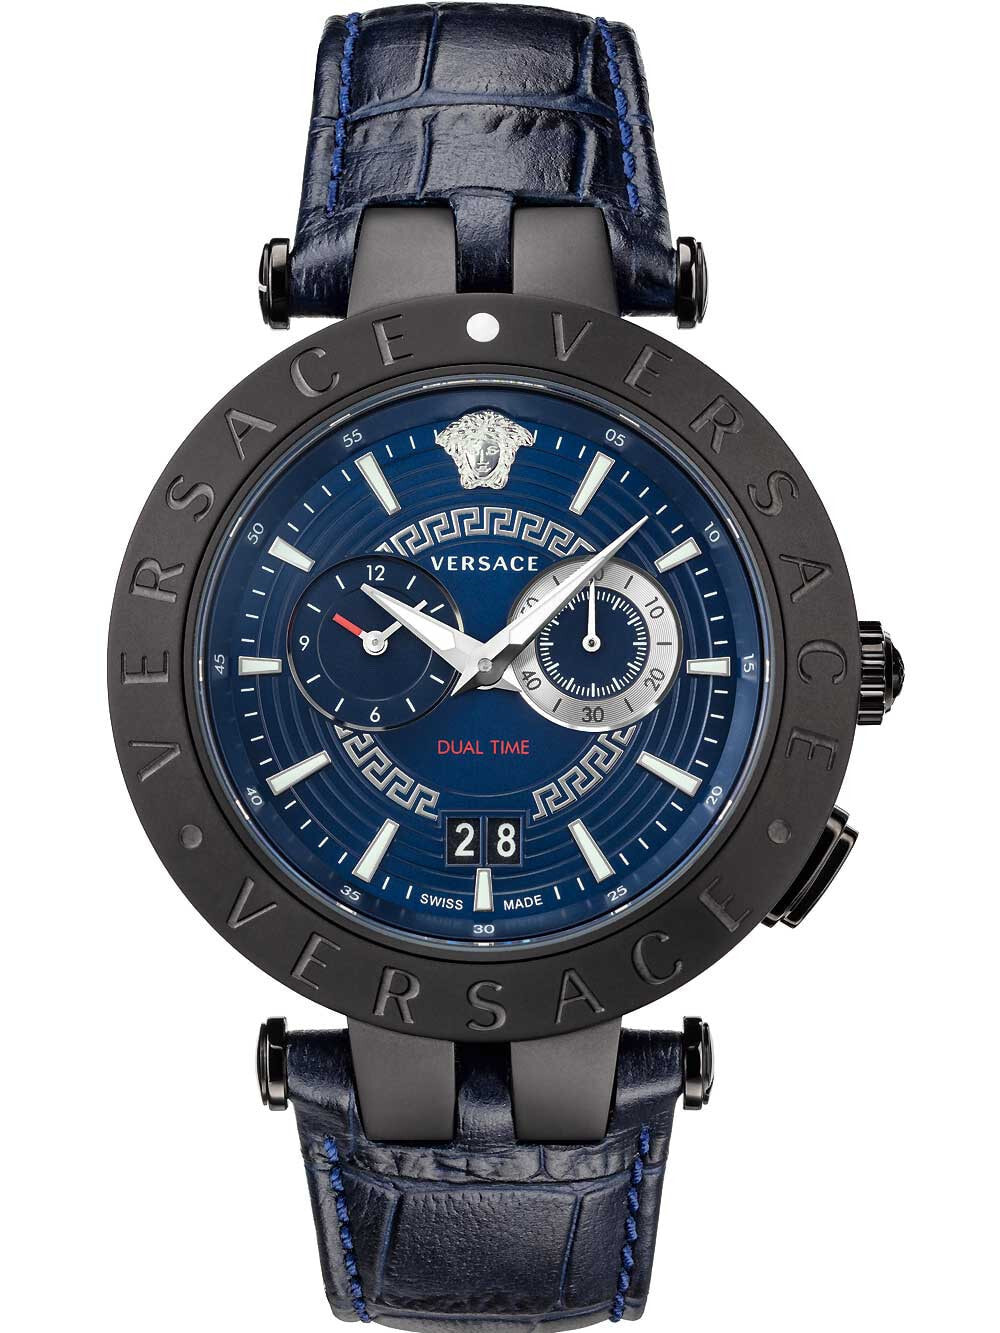 Мужские наручные часы с синим кожаным ремешком Versace VEBV00419 New V-Race dual-time 46mm 5ATM